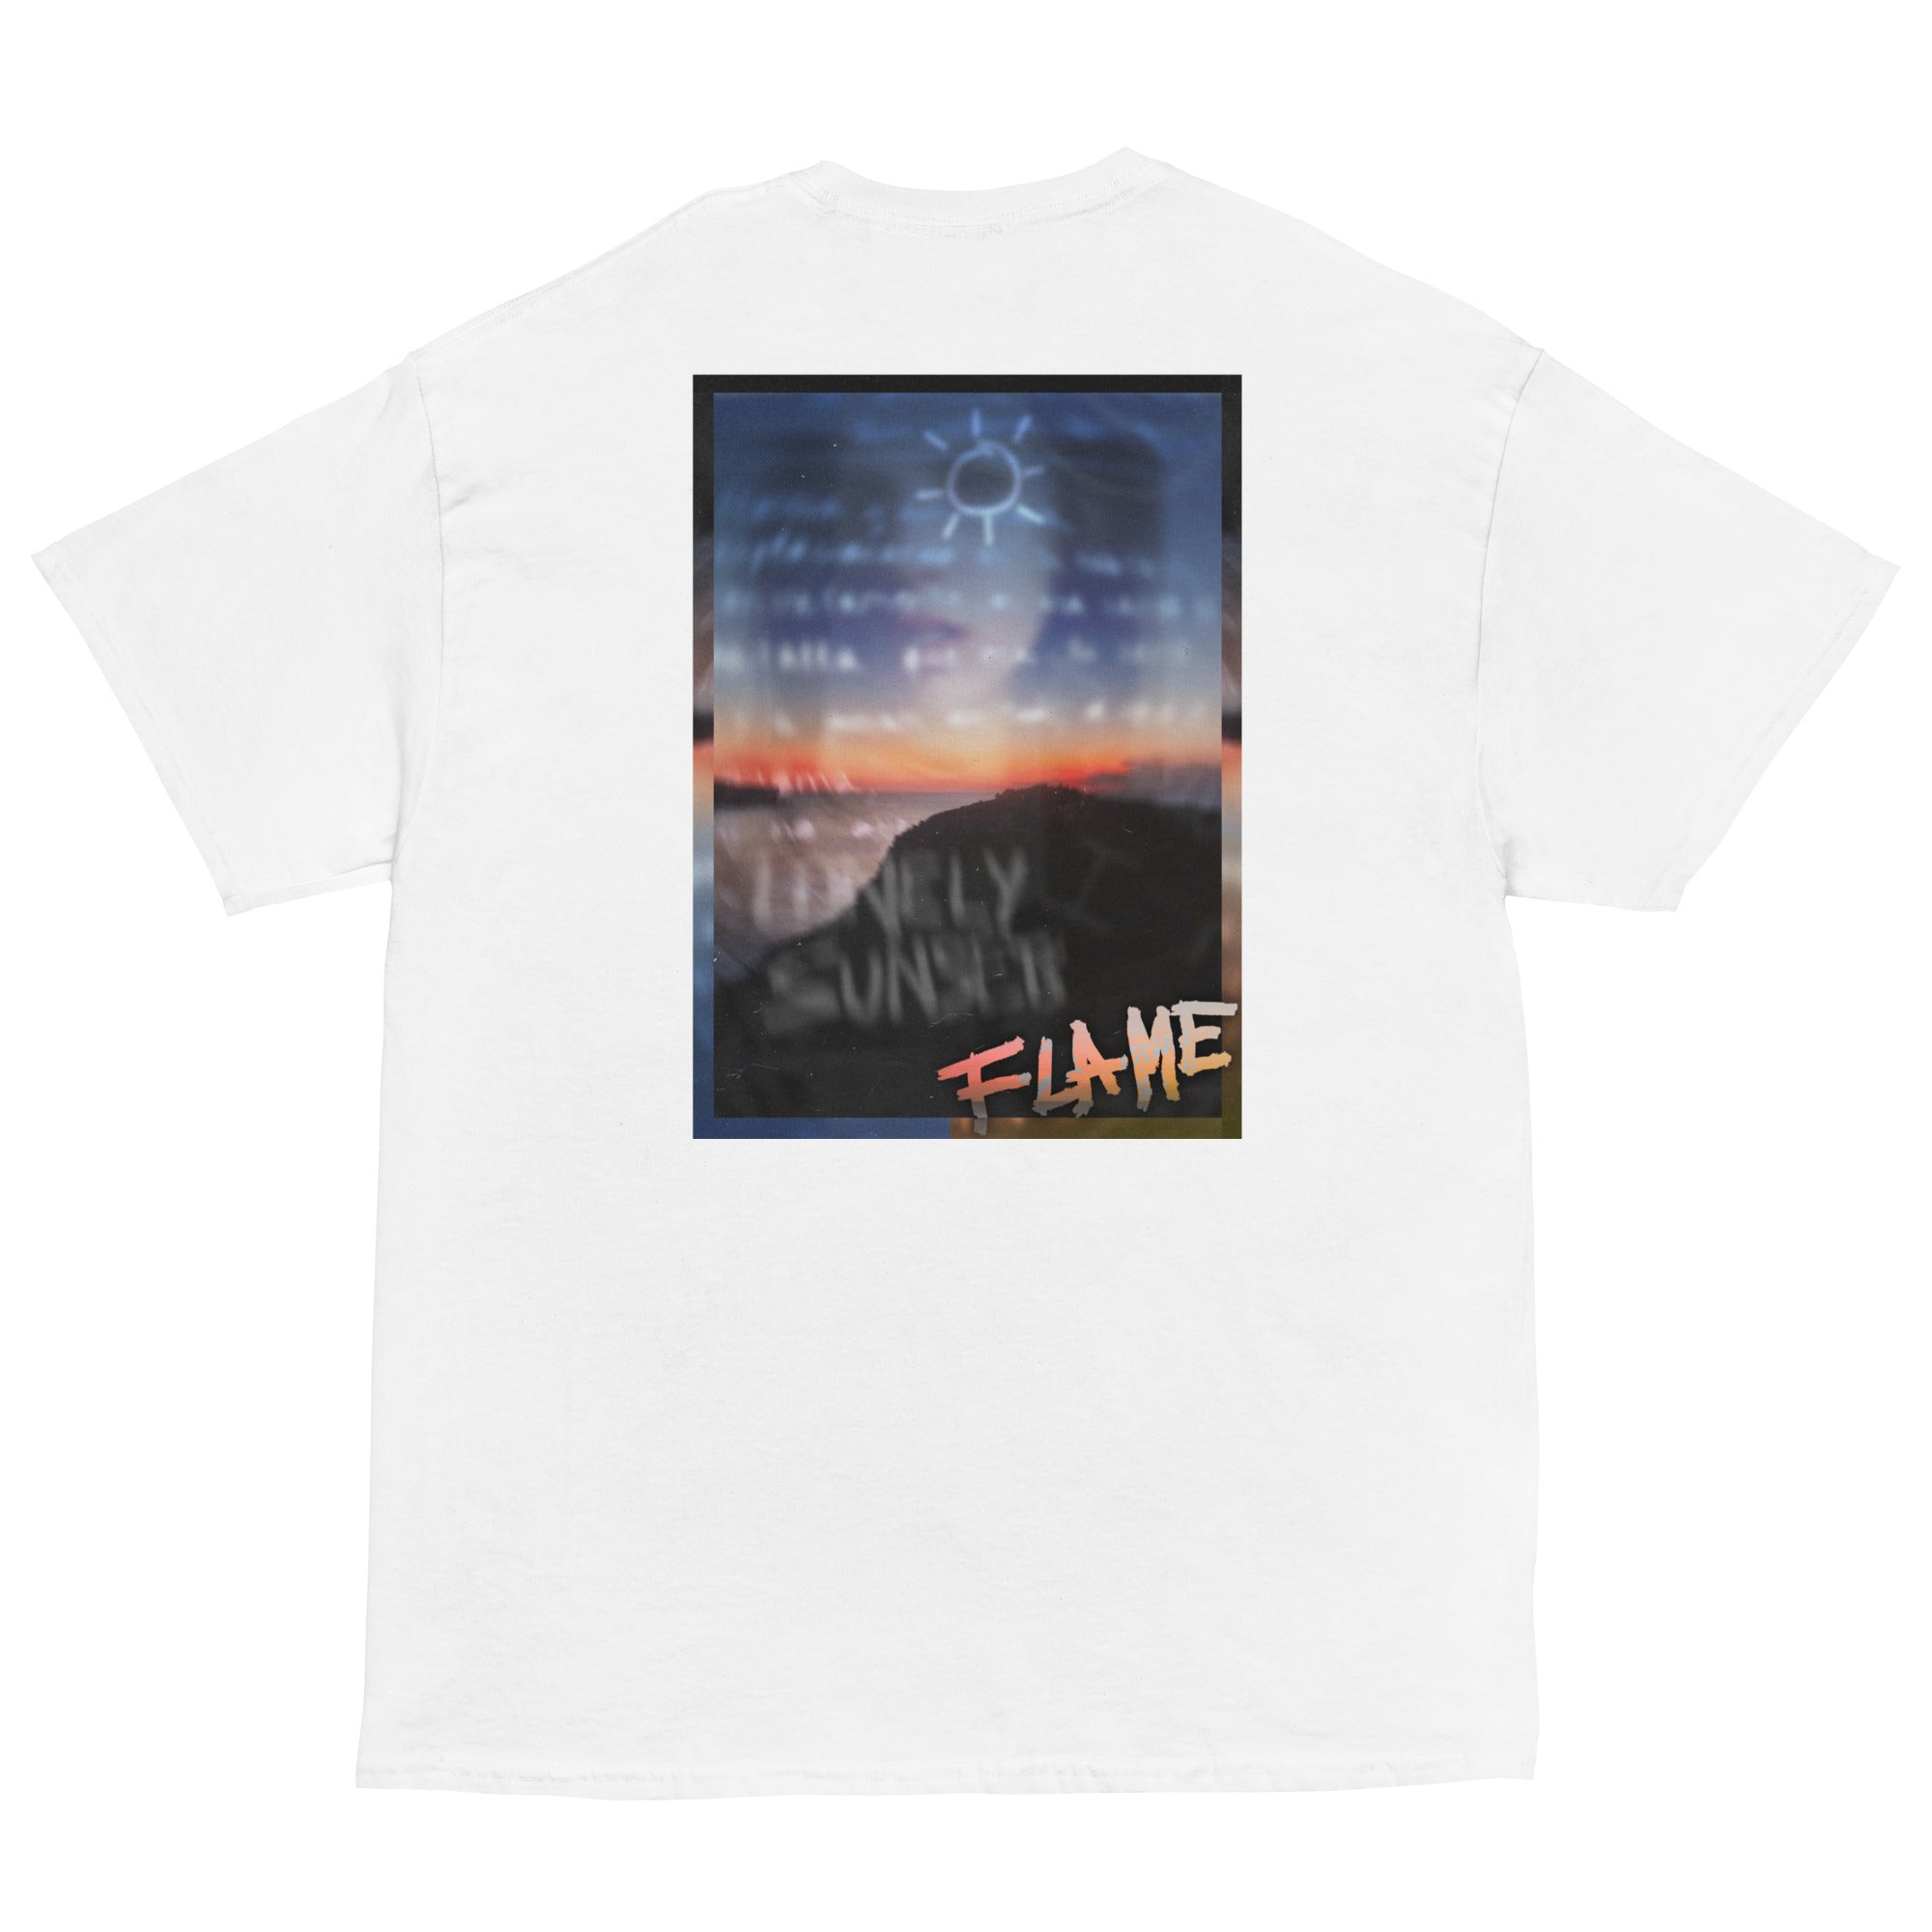 Camiseta clásica bordada "Drnkn Sunset" by Flame